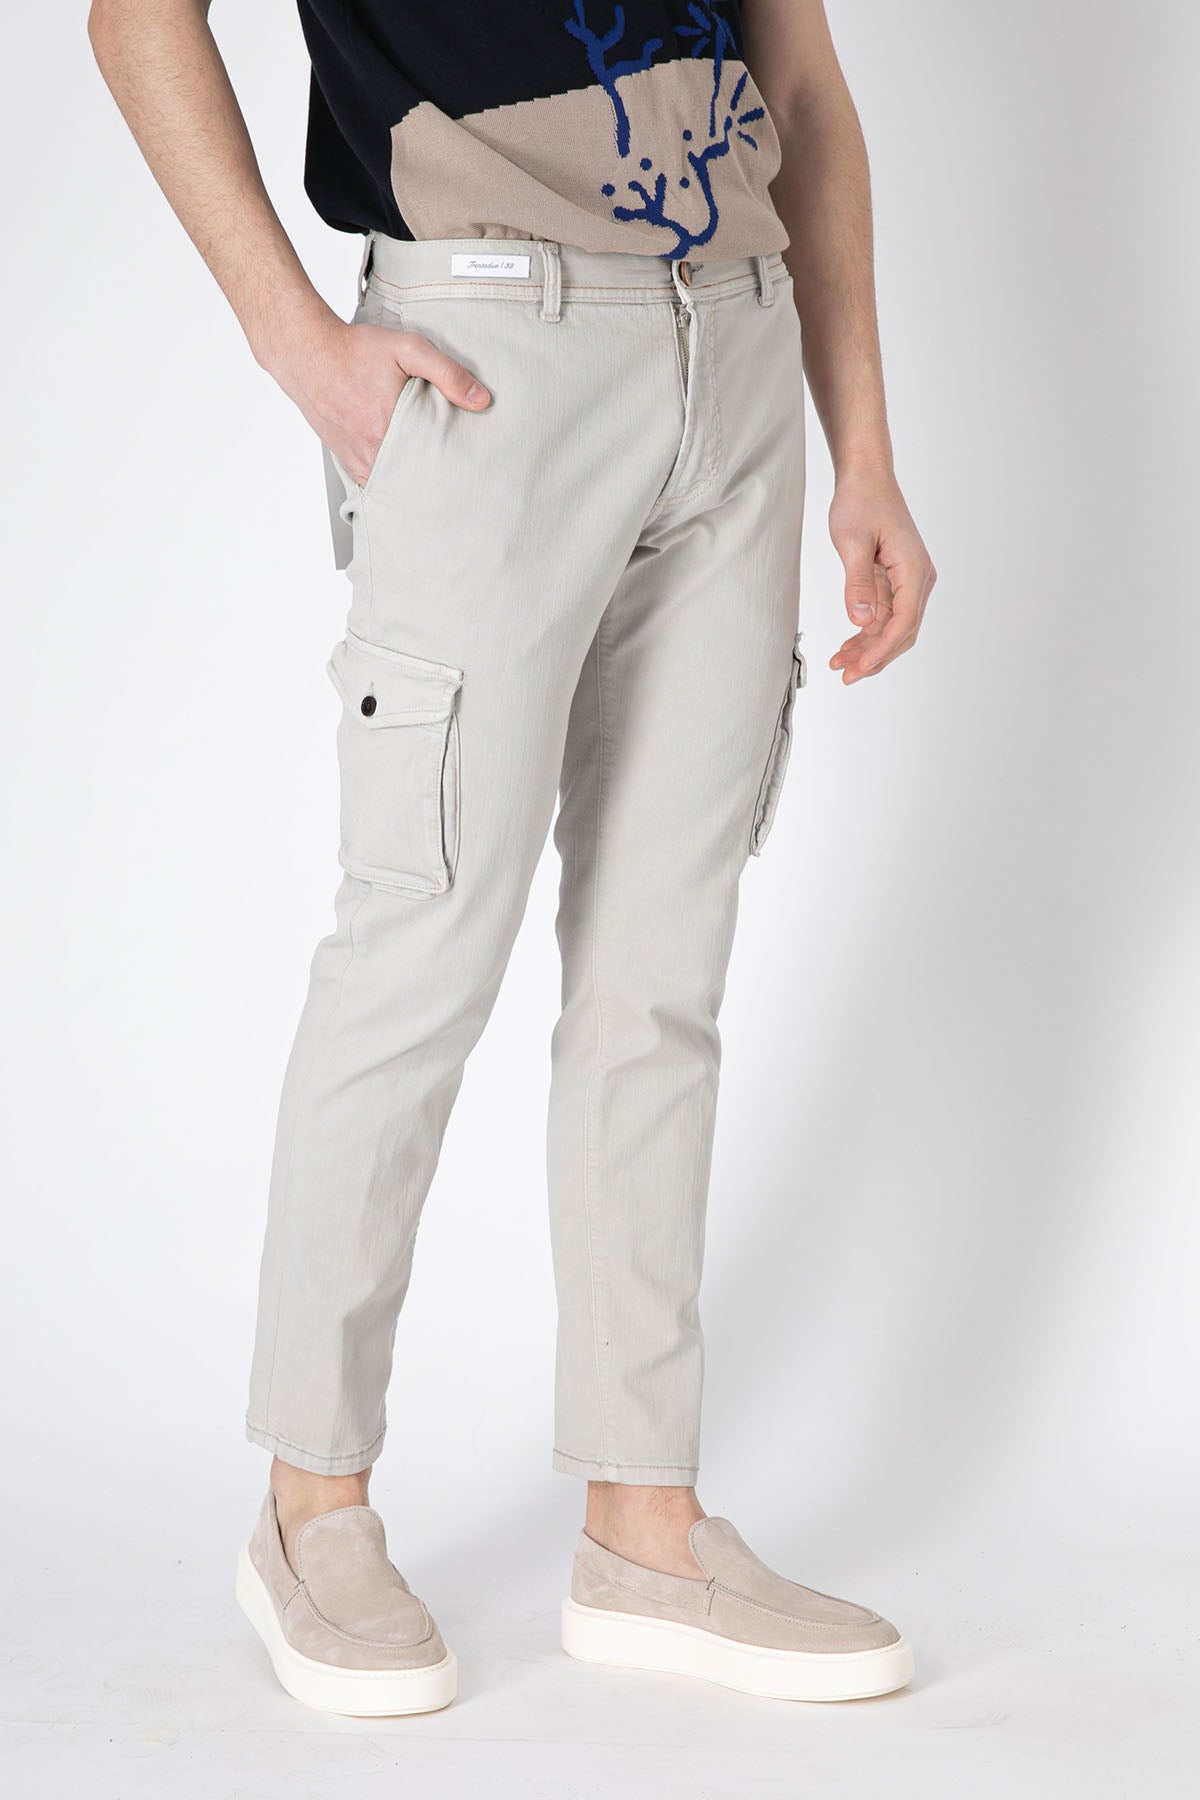 Richard J. Brown Slim Fit Yandan Cepli Kargo Pantolon-Libas Trendy Fashion Store